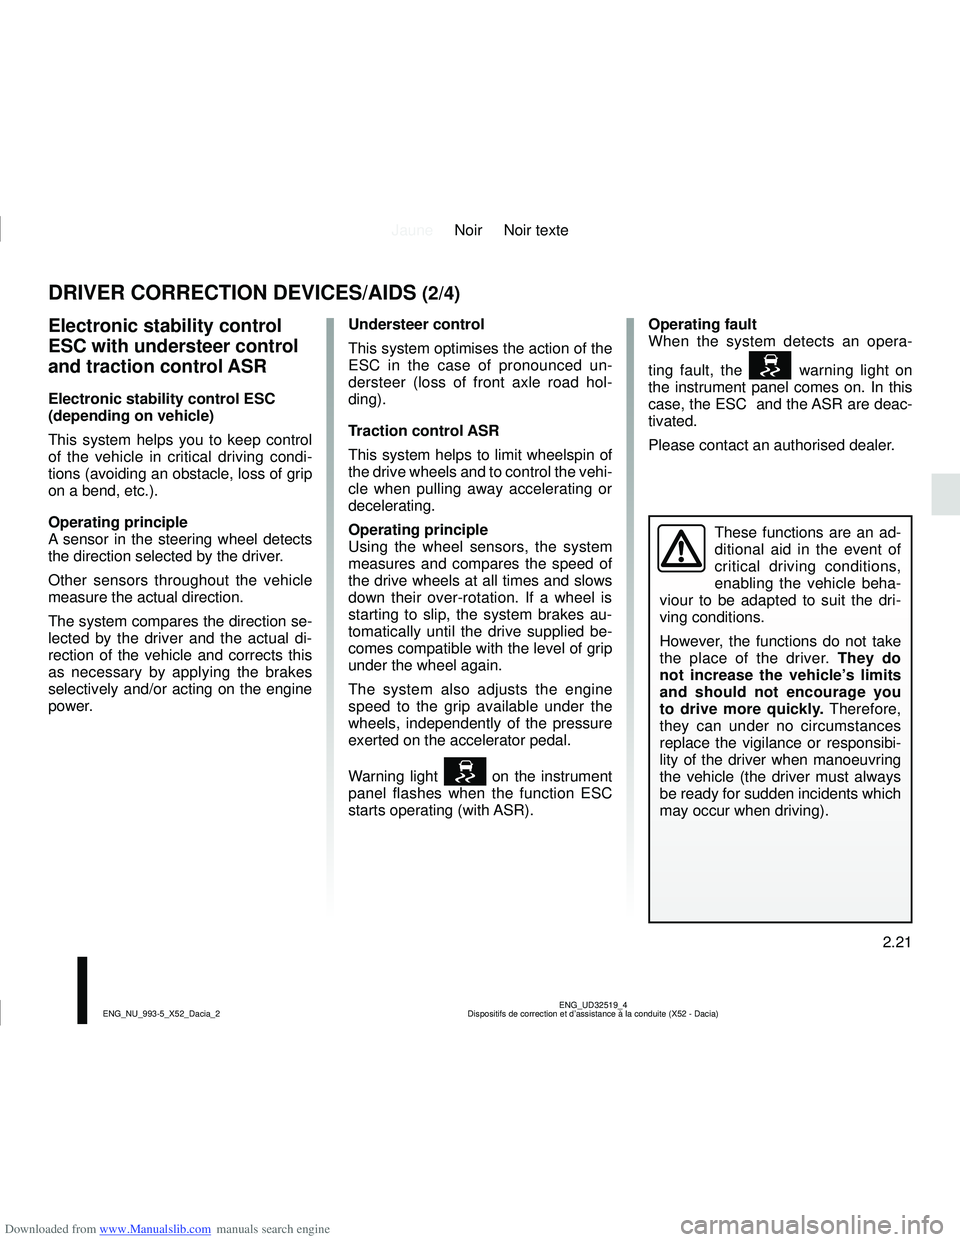 DACIA SANDERO 2014  Owners Manual Downloaded from www.Manualslib.com manuals search engine JauneNoir Noir texte
2.21
ENG_UD32519_4
Dispositifs de correction et d’assistance à la conduite (X52 - Da\
cia)
ENG_NU_993-5_X52_Dacia_2
DRI